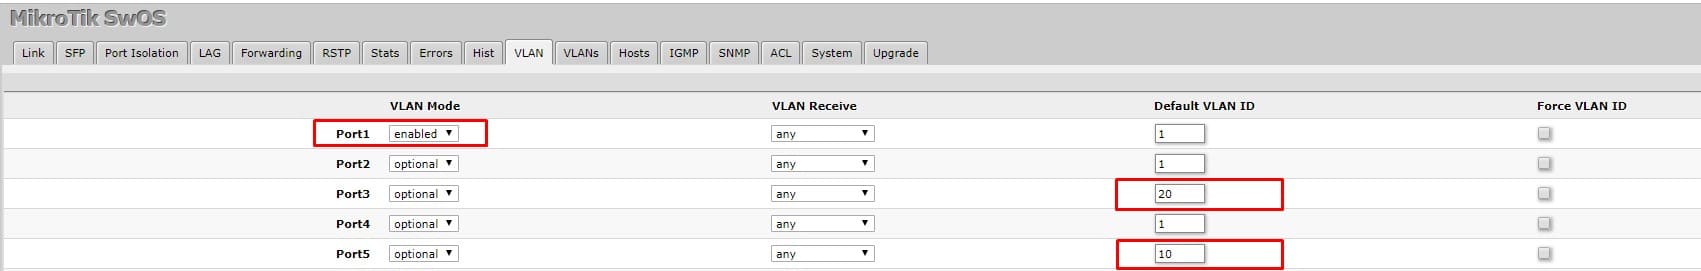 Настройка VLAN в MikroTik SwOS, определение тегированного и нетегированного порта